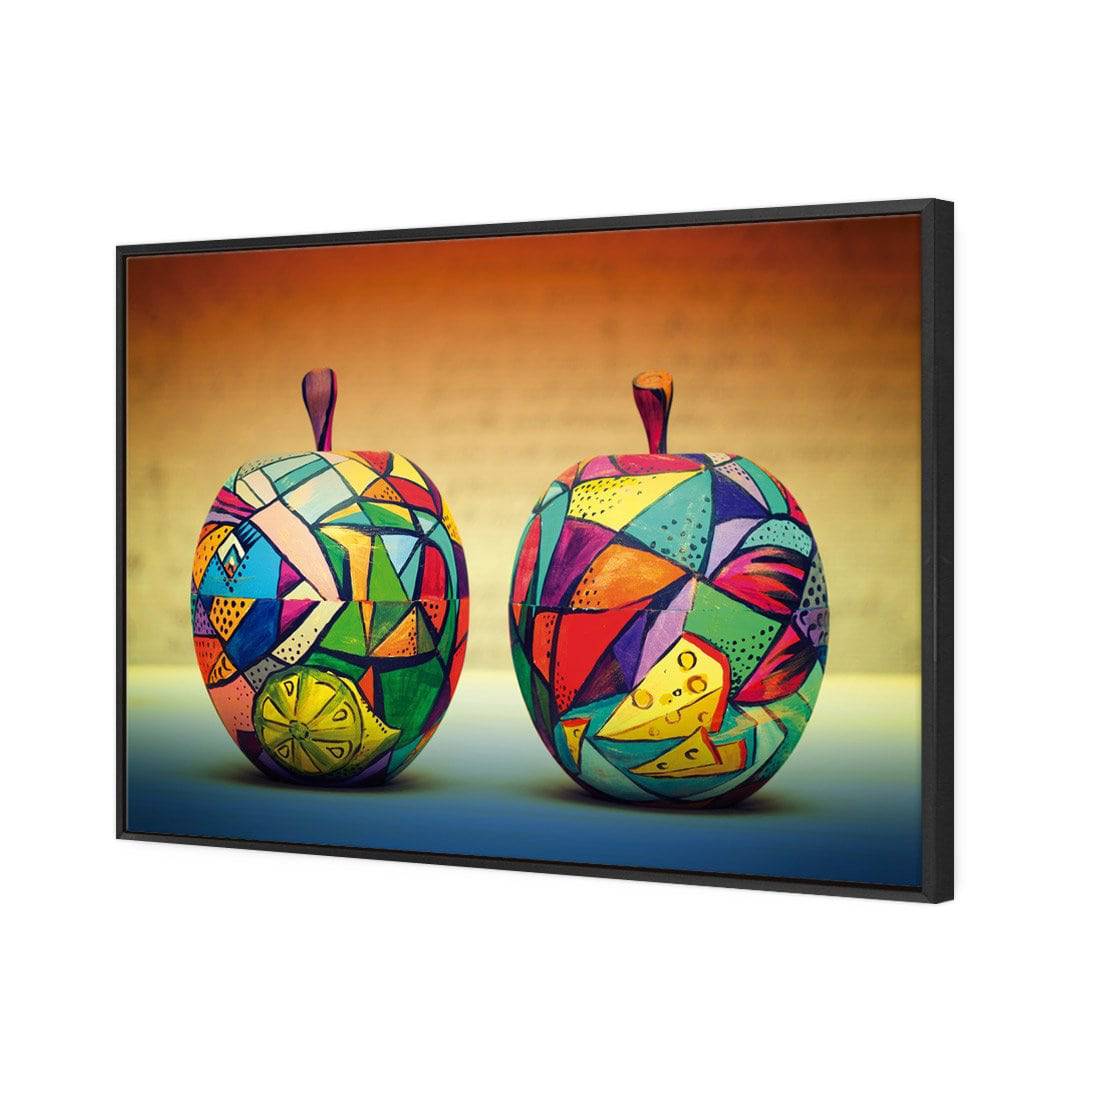 Forbidden Fruit Canvas Art-Canvas-Wall Art Designs-45x30cm-Canvas - Black Frame-Wall Art Designs